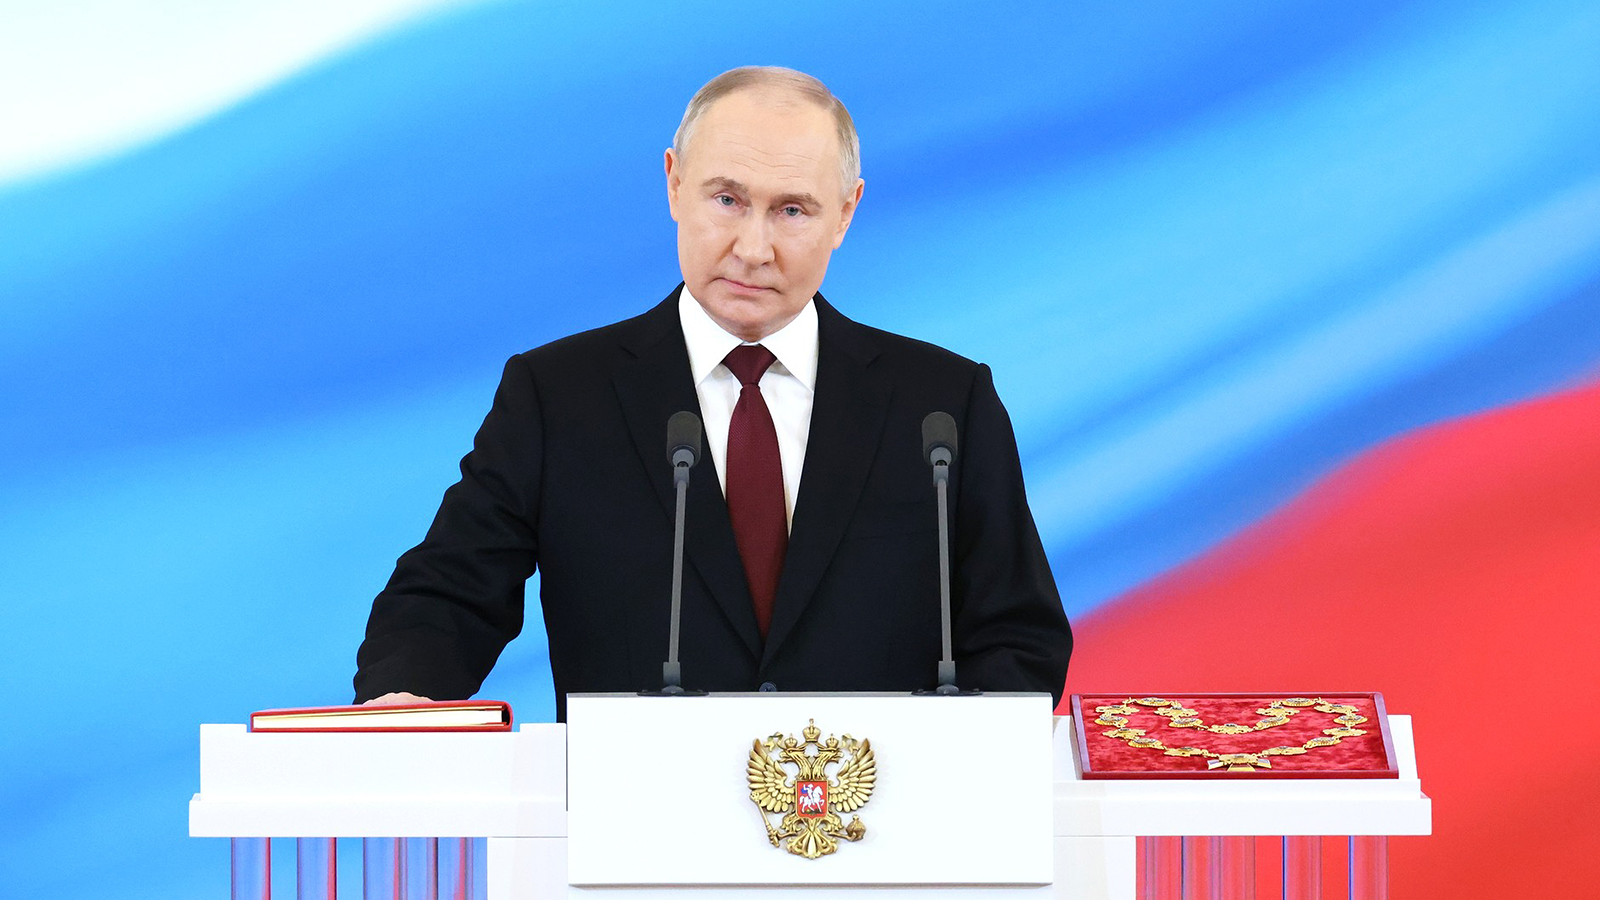 بوتين يؤدي يمين الولاية الخامسة:روسيا ستخرج أقوى